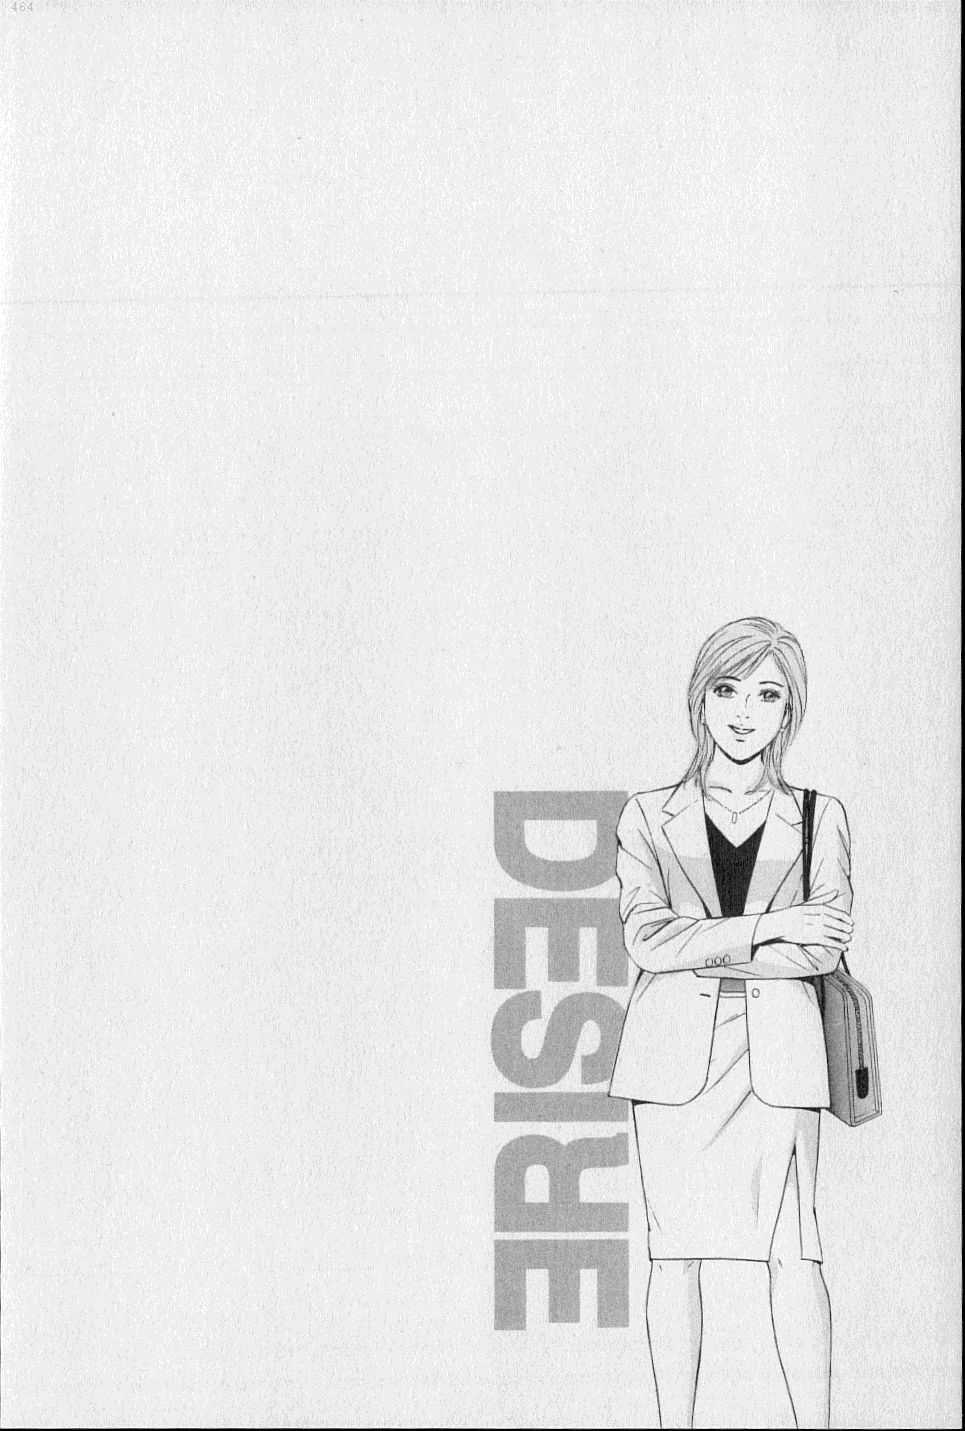 Desire 19 (J) 